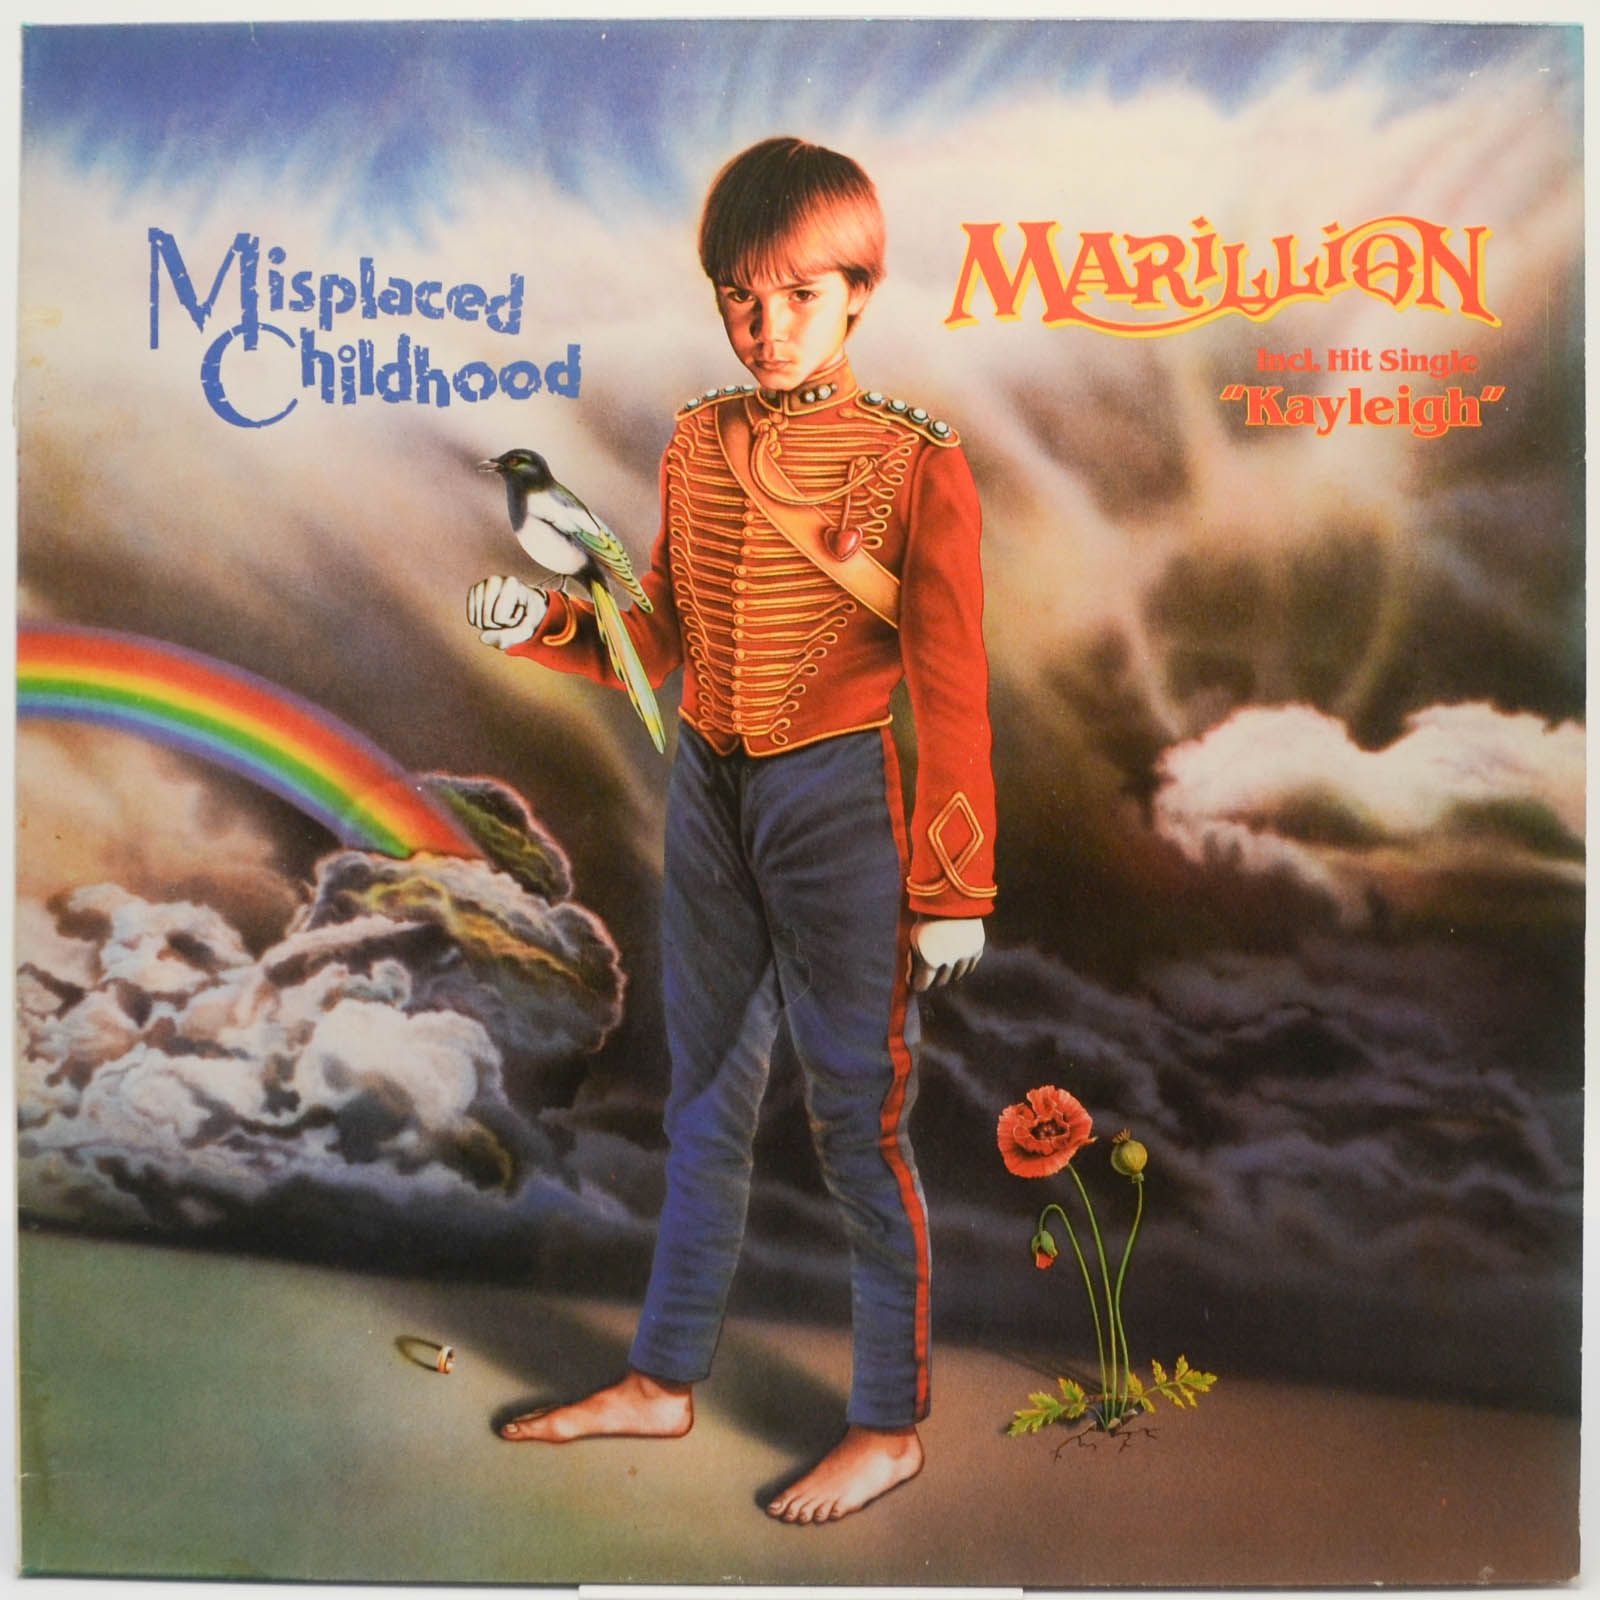 Marillion — Misplaced Childhood, 1985